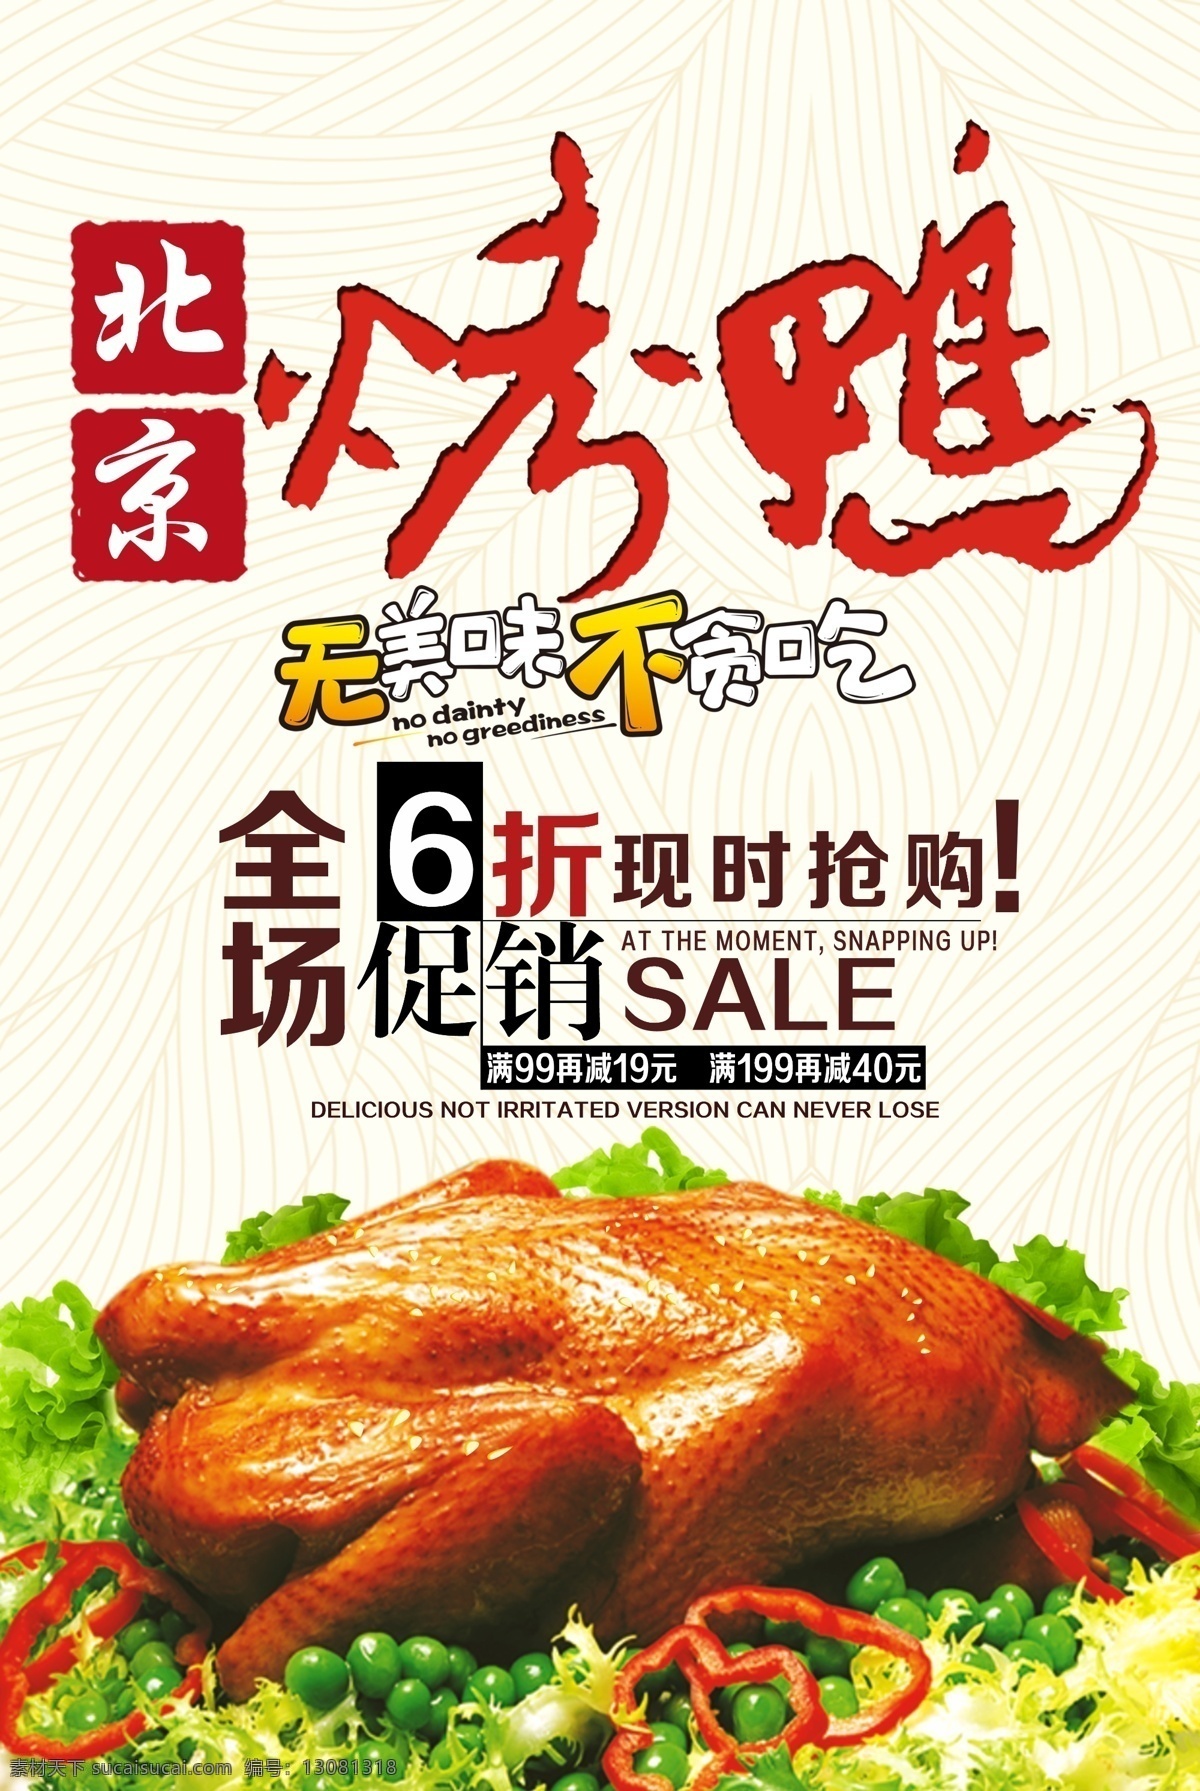 烤鸭海报 烤鸭 烤鸭展板 北京烤鸭 烤鸭图片 脆皮烤鸭 海报